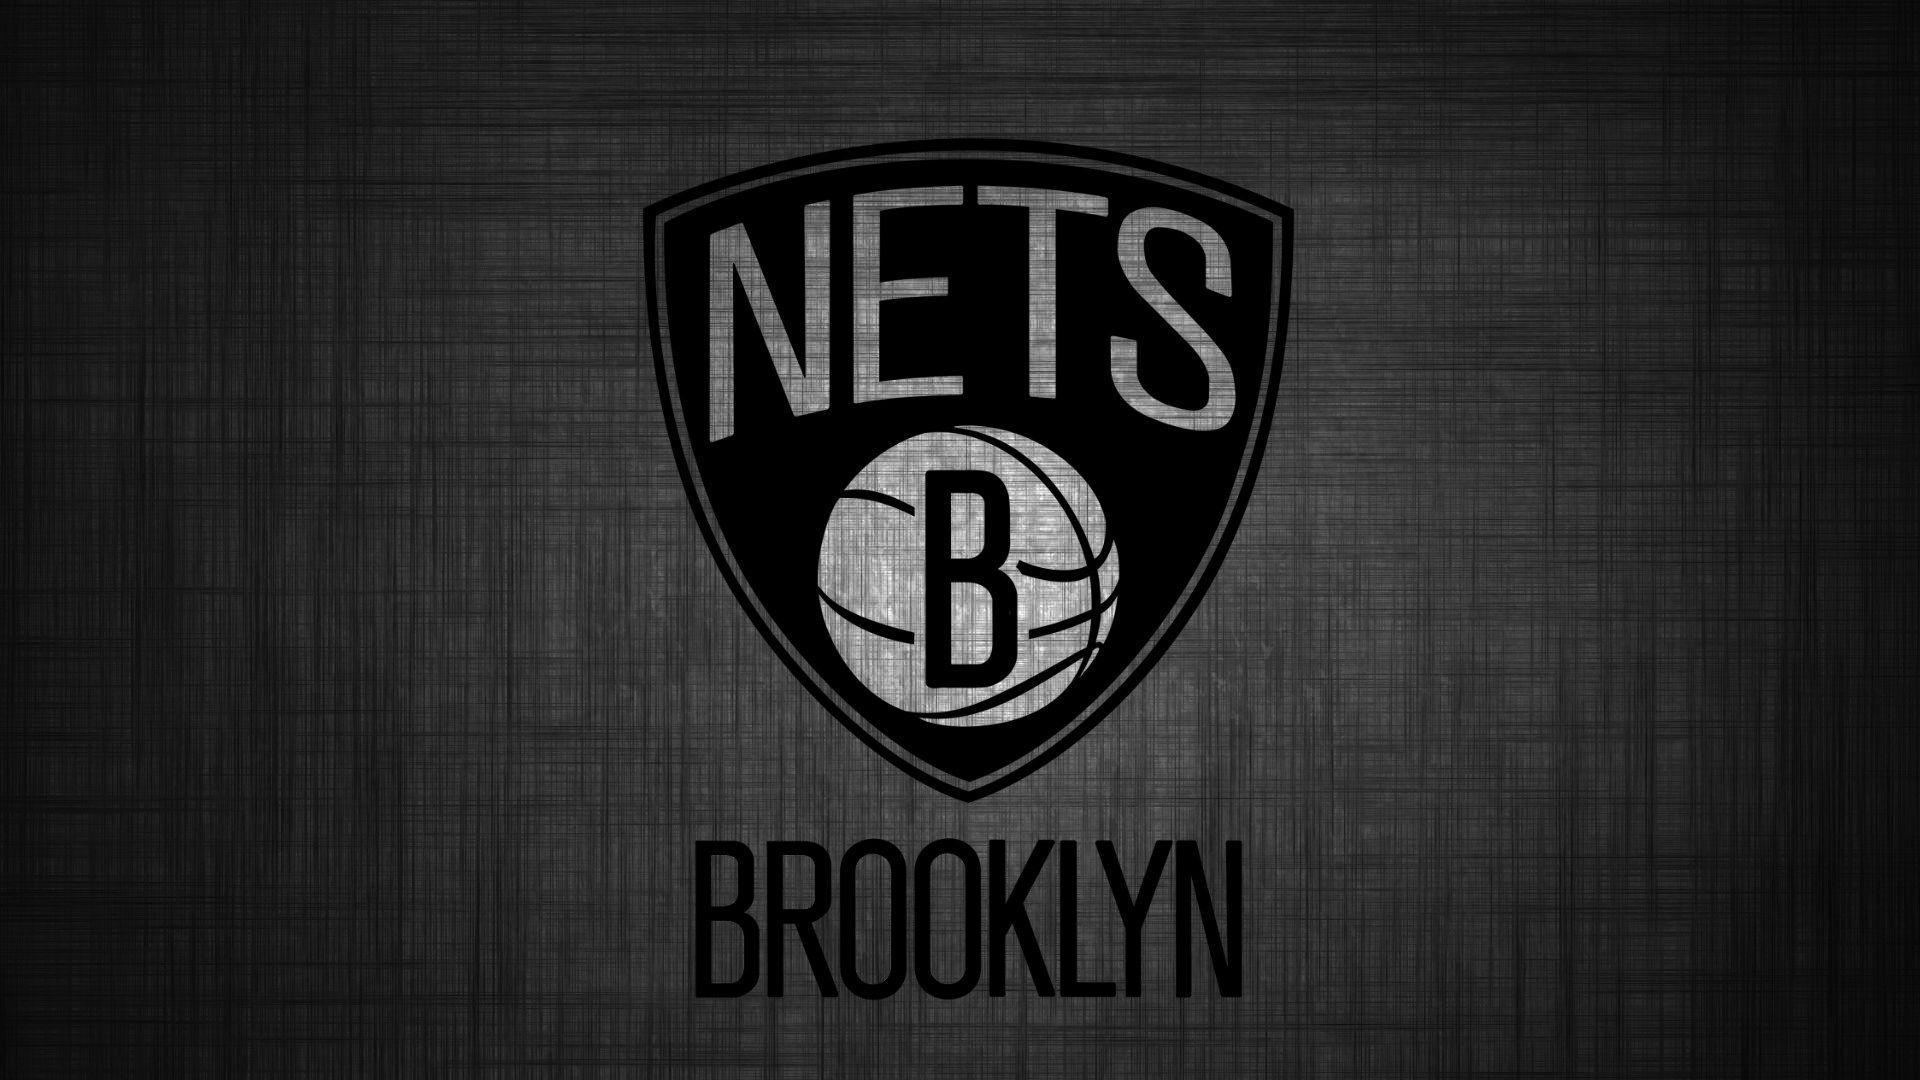 Brooklyn Nets Logo Wallpaper / Brooklyn Nets Wallpaper By